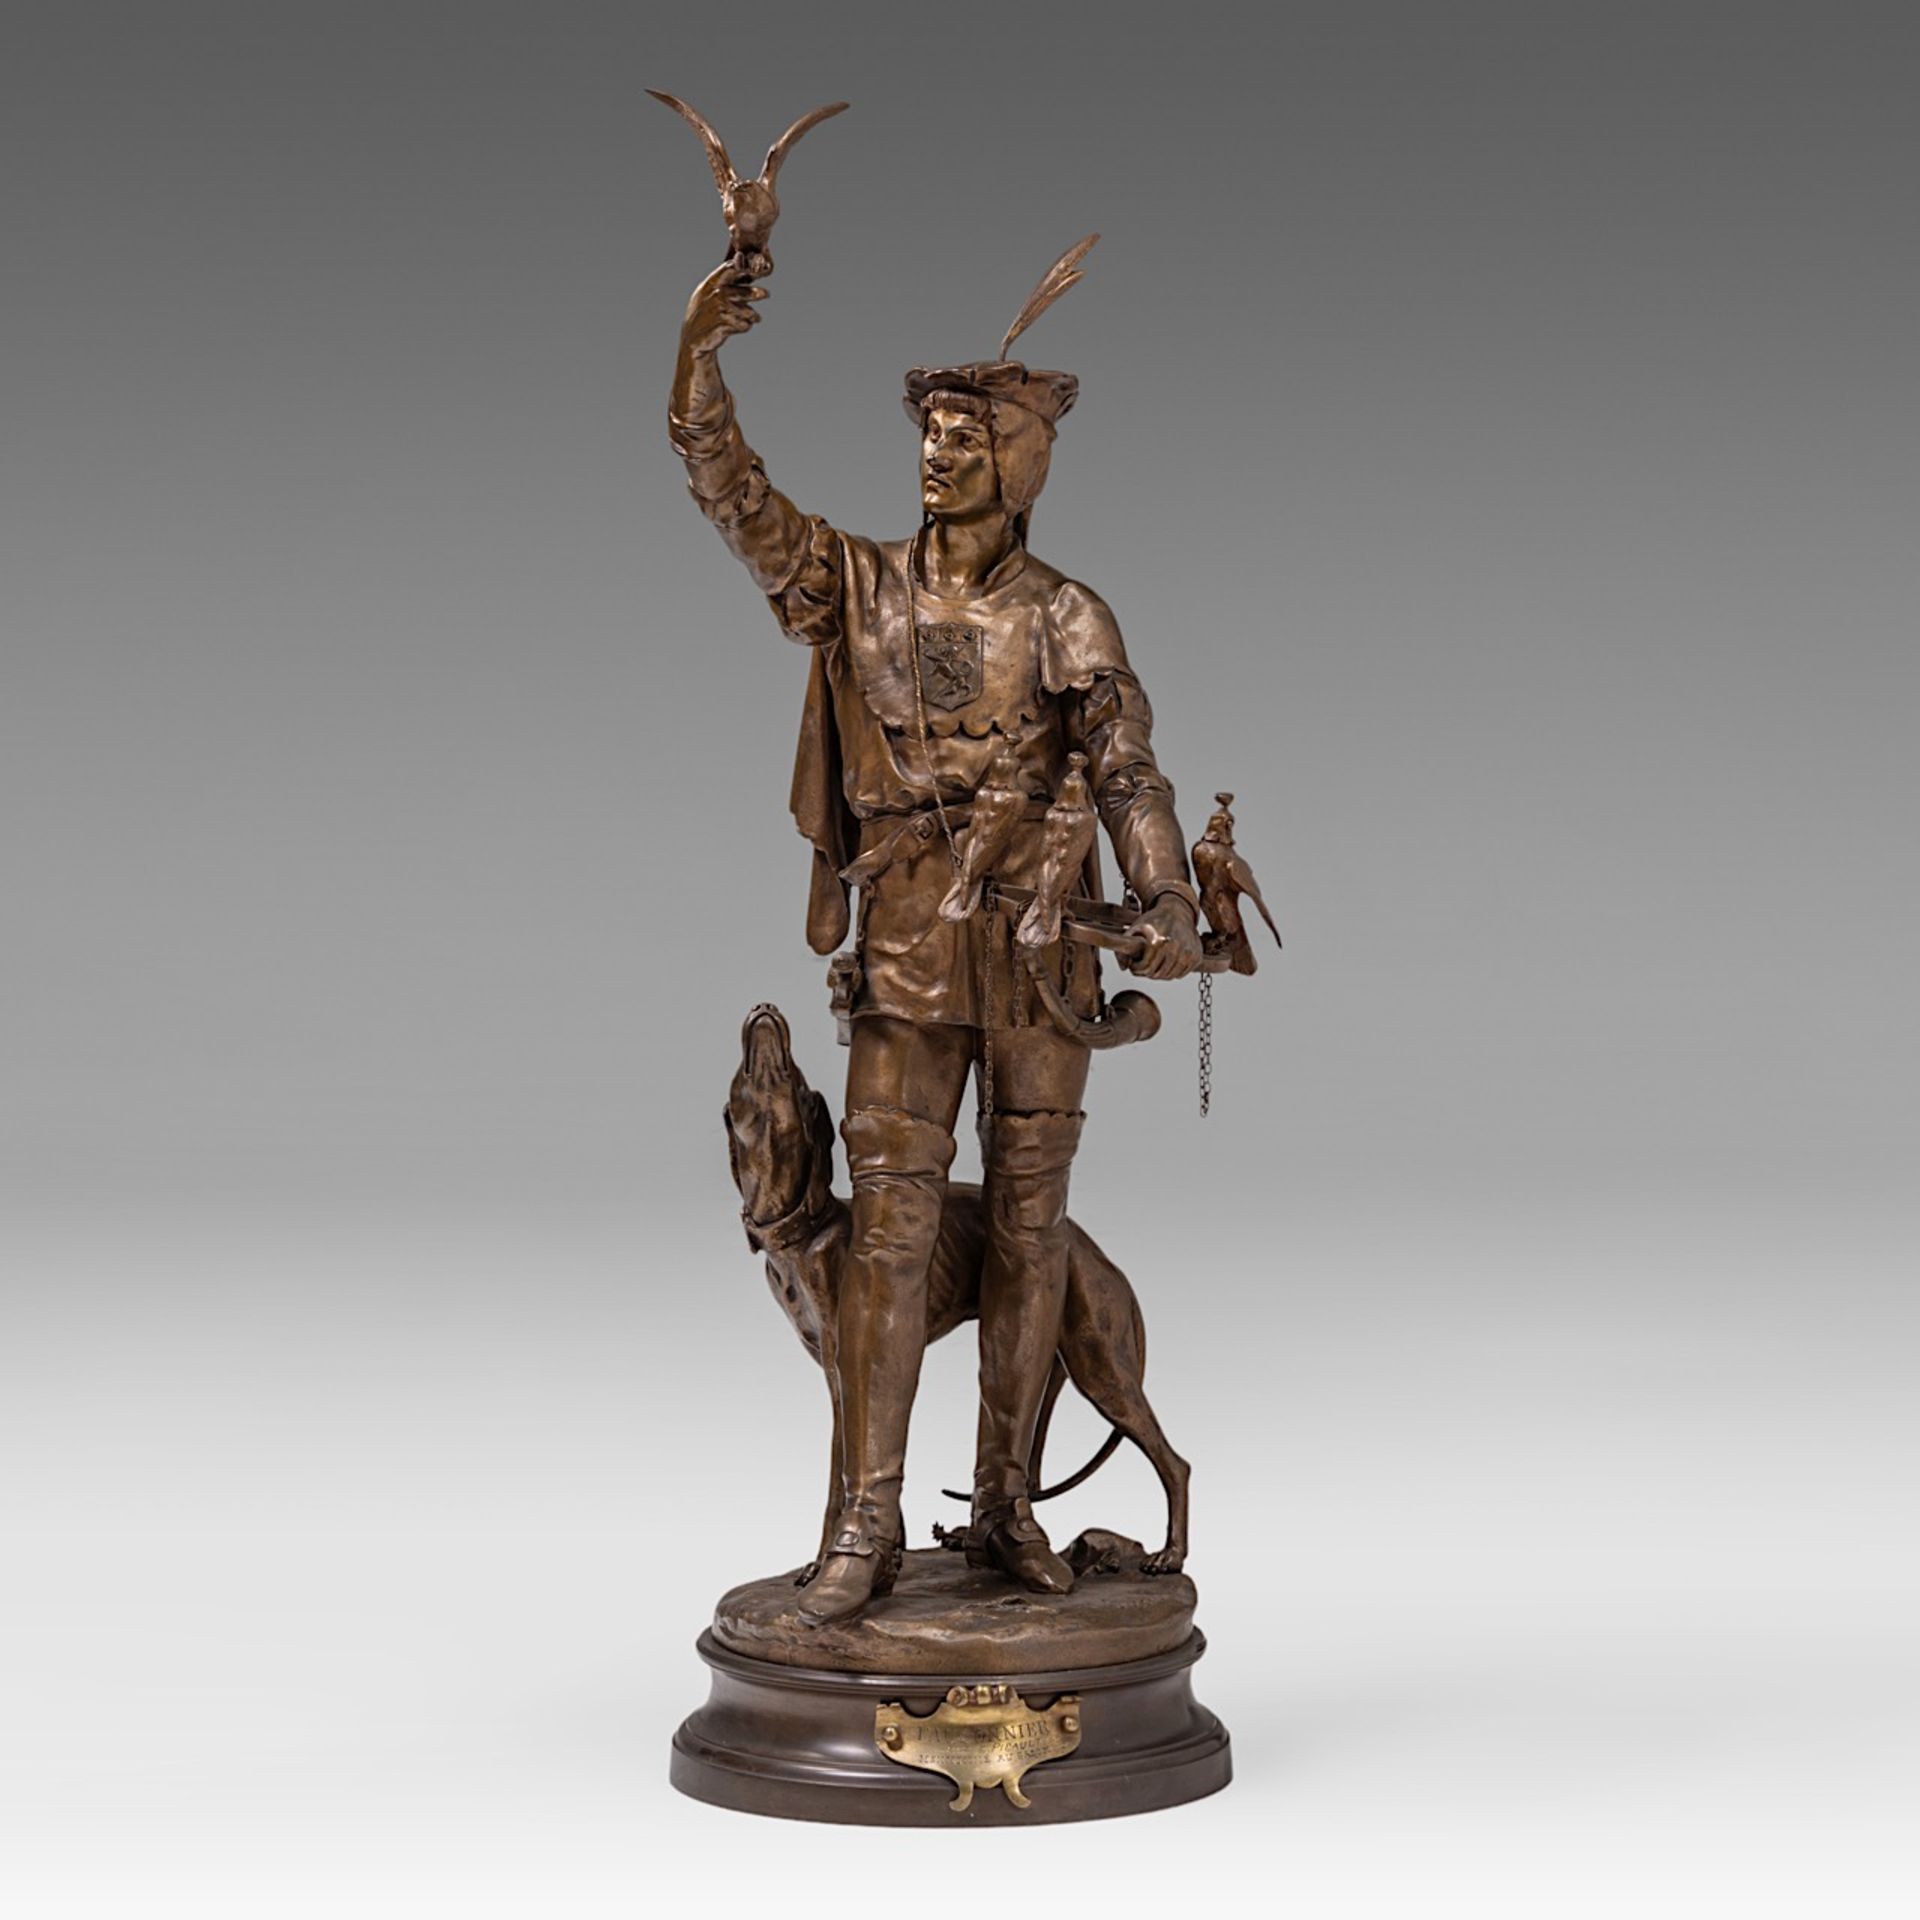 Emile Louis Picault (1833-1915), 'Le Fauconnier', patinated bronze, H 85 cm